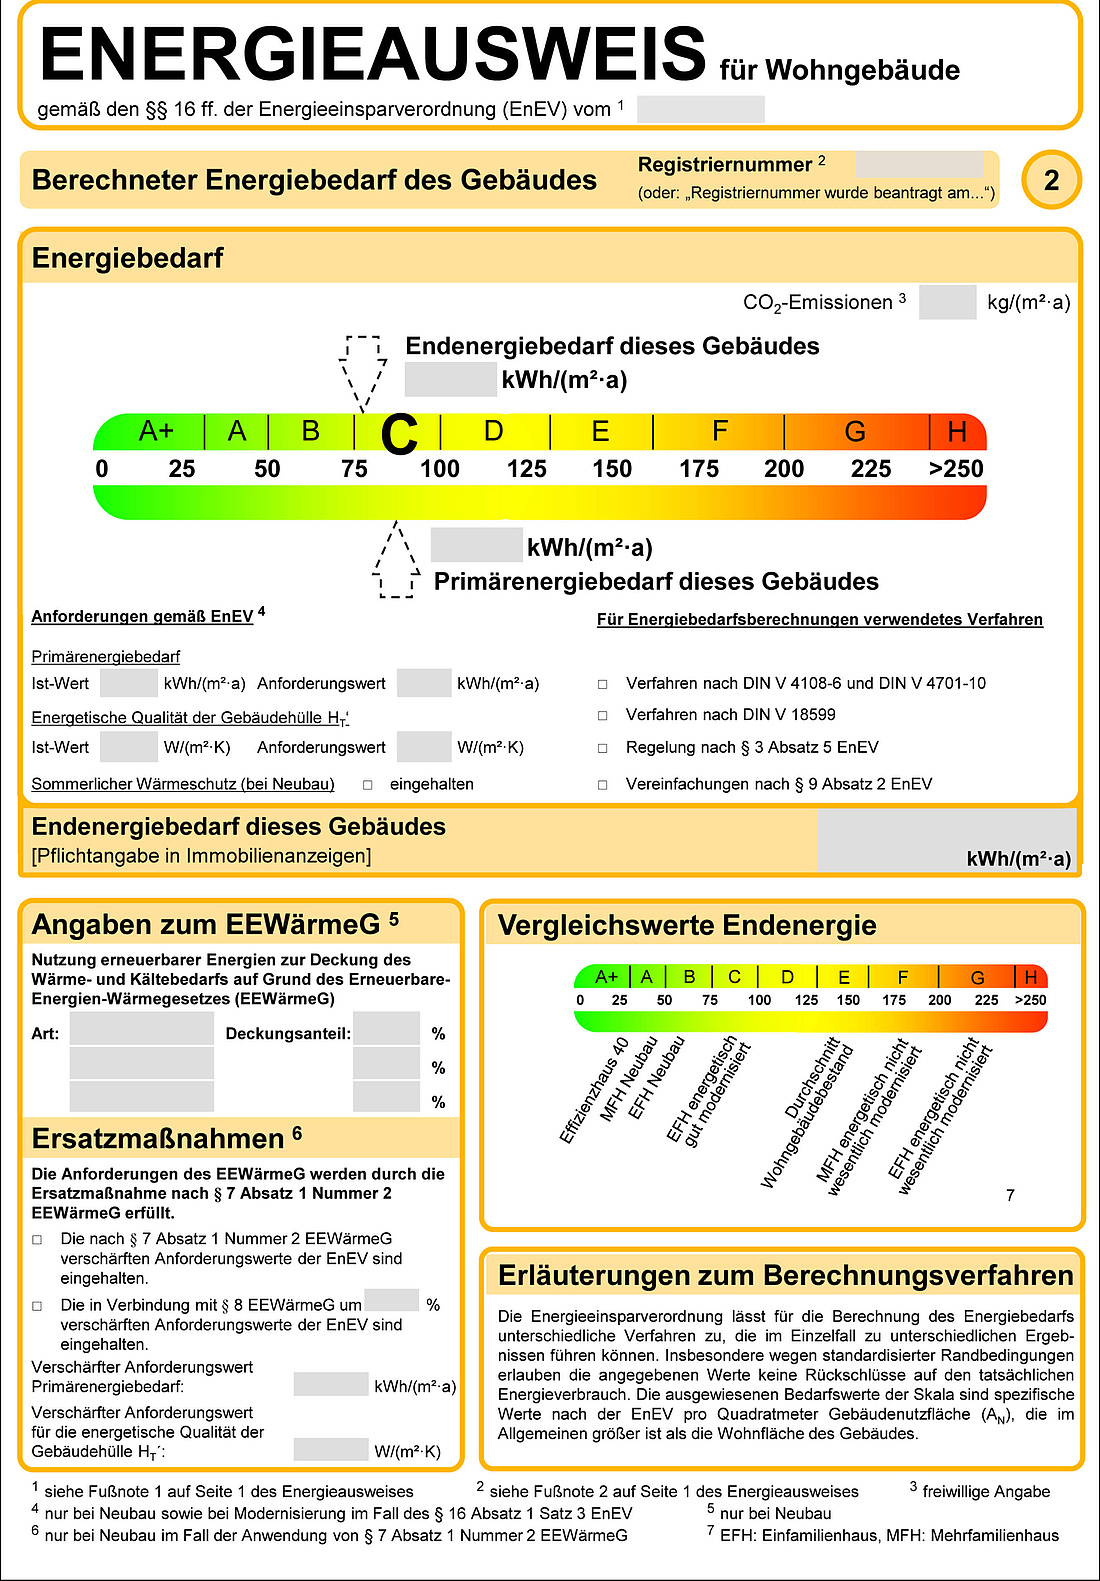 Muster-Bedarfsausweis gemäß Energieeinsparverordnung (EnEV) (Grafik: BMWK)